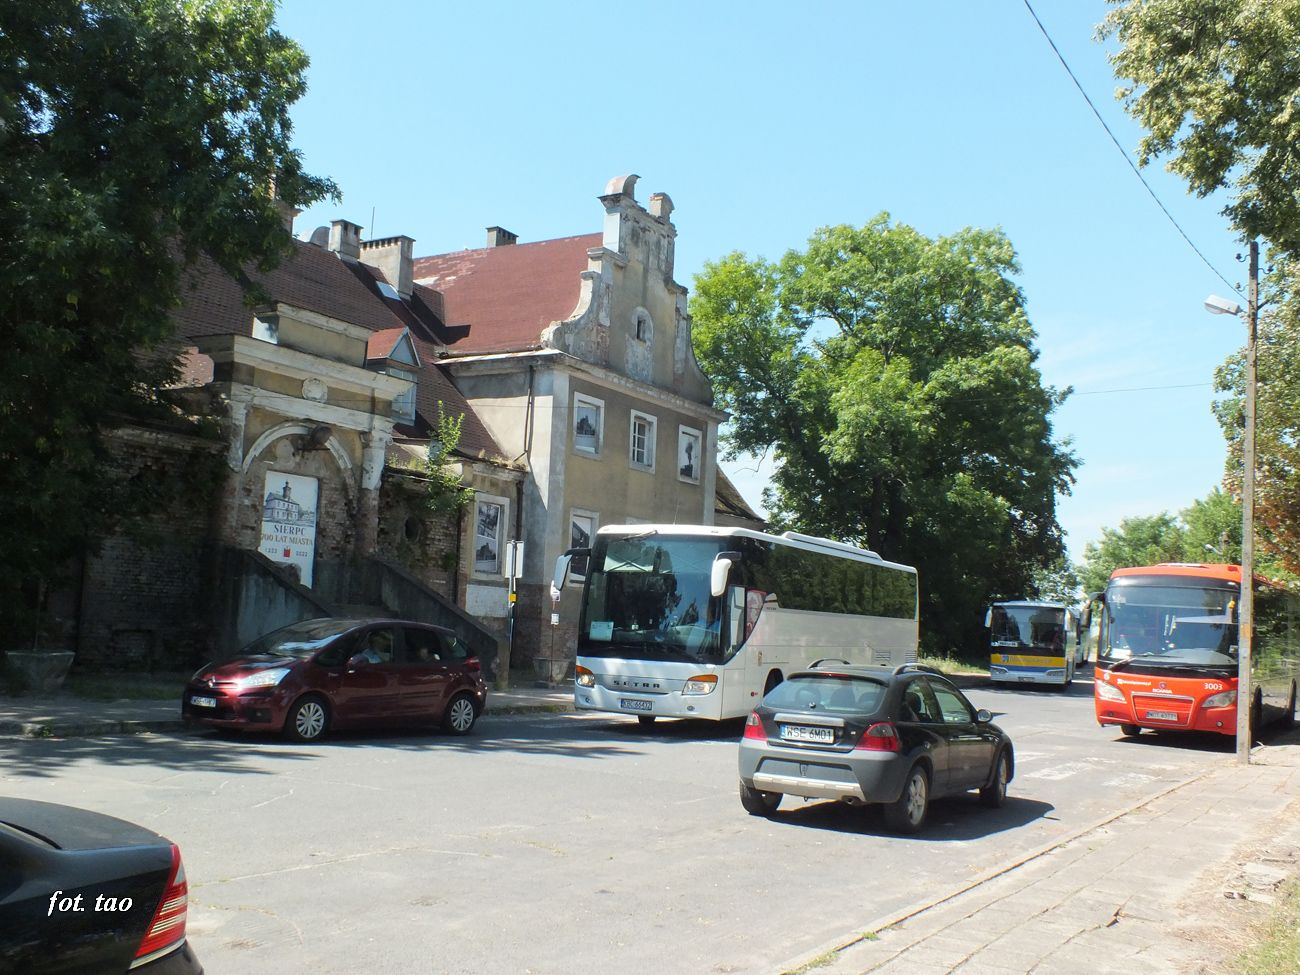 Od strony miasta przed dworcem czekaj autobusy jako komunikacja zastpcza do Pocka, sierpie 2022 r.